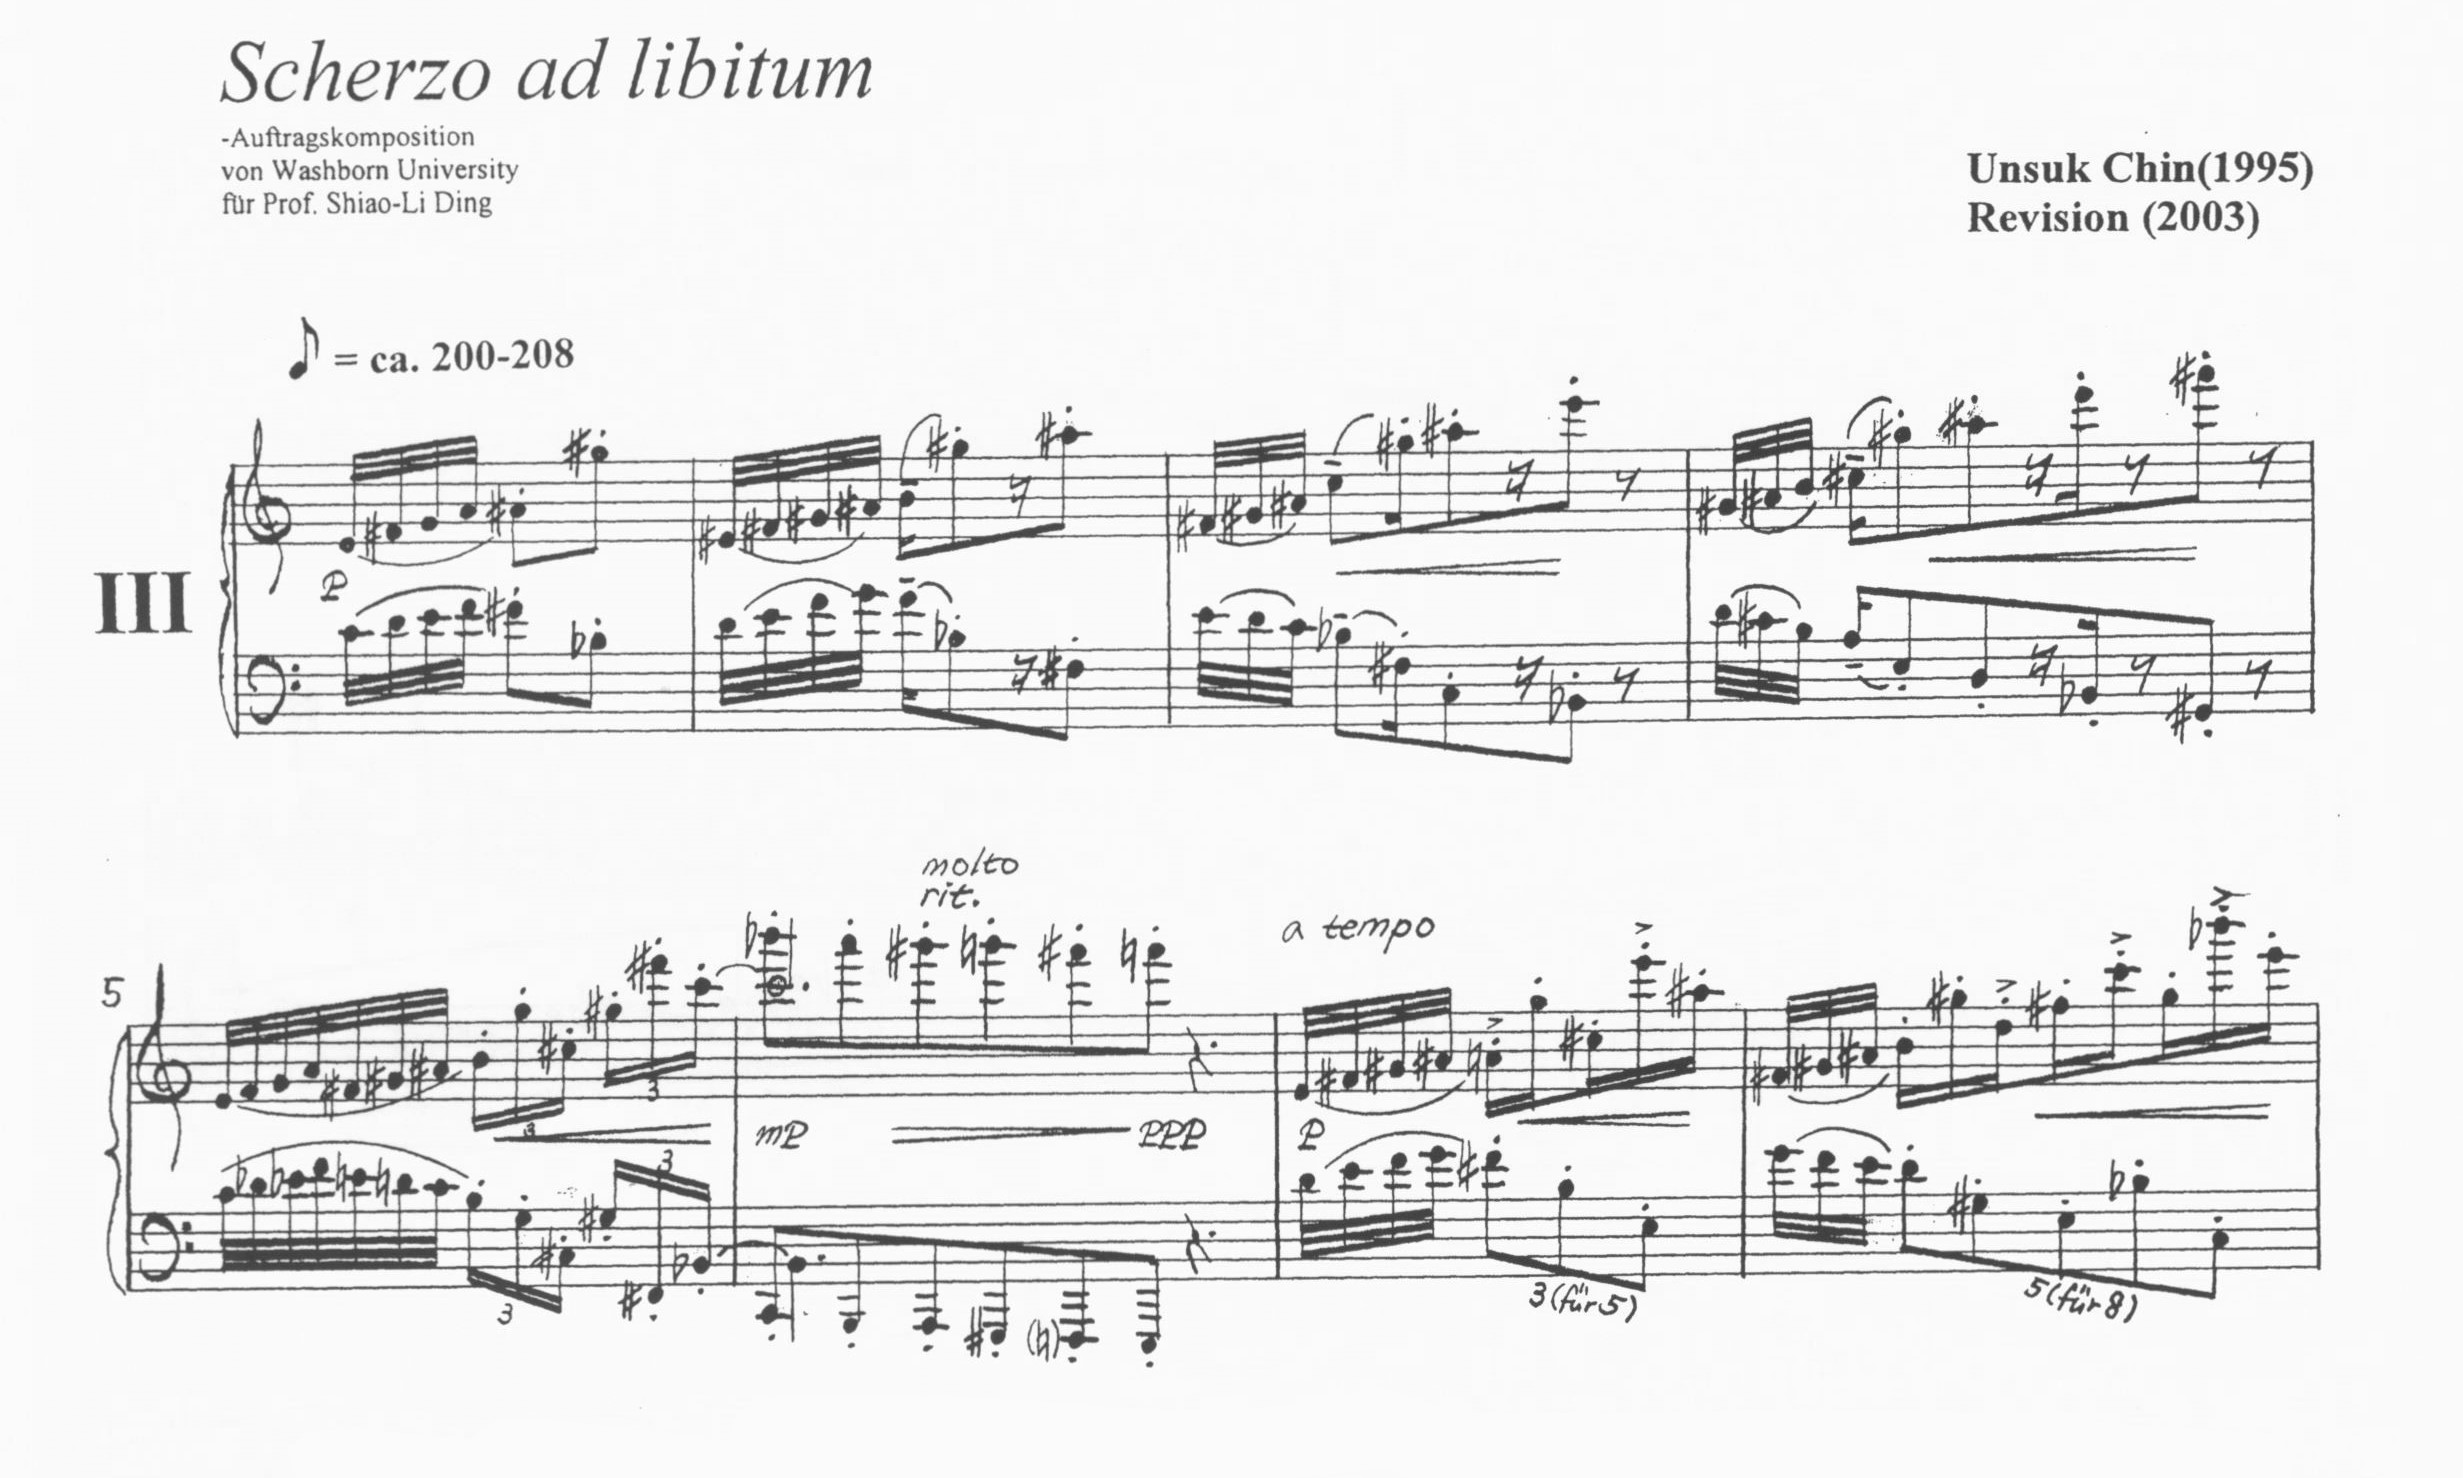 Piano Etude No. 3: Scherzo ad libitum - Unsuk Chin